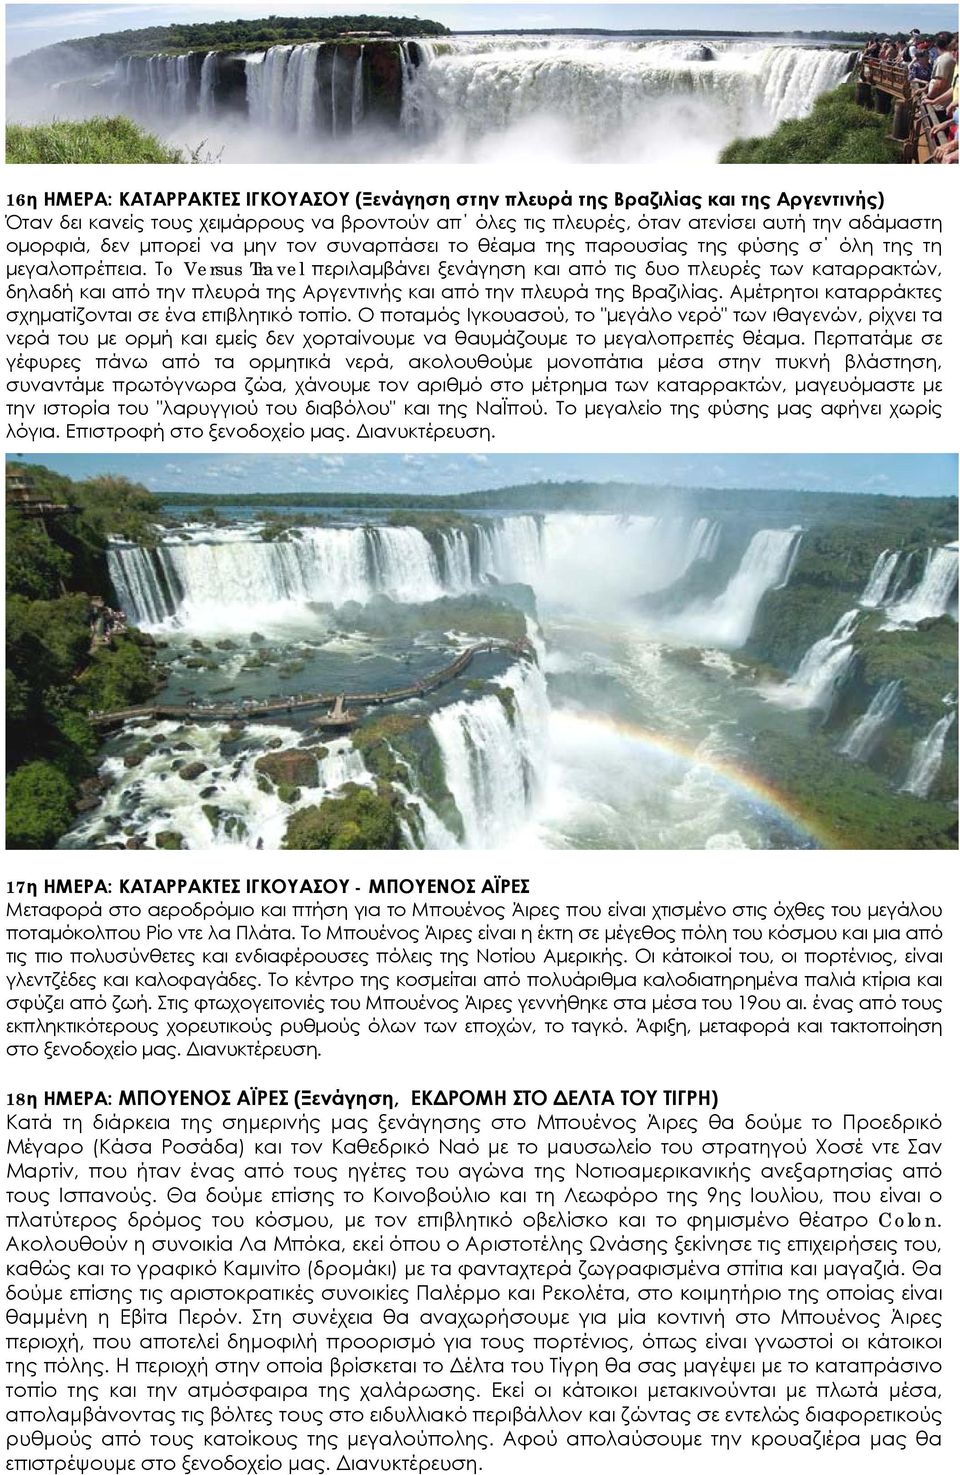 Τo Versus Travel περιλαμβάνει ξενάγηση και από τις δυο πλευρές των καταρρακτών, δηλαδή και από την πλευρά της Αργεντινής και από την πλευρά της Βραζιλίας.